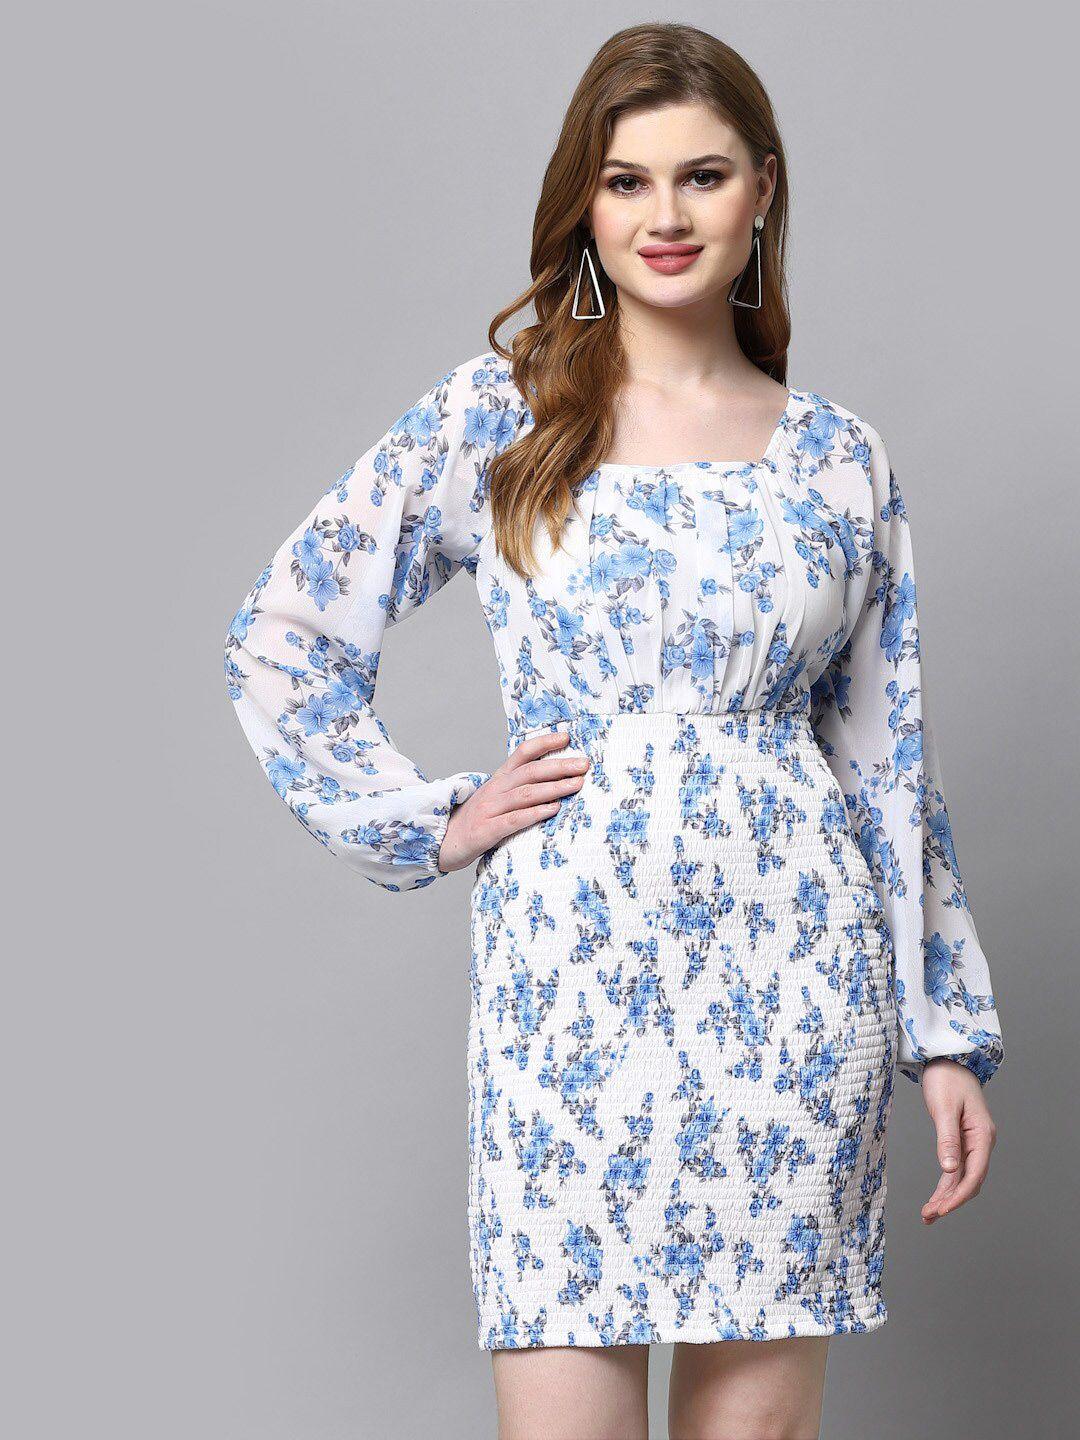 aayu blue floral print bell sleeve georgette sheath dress